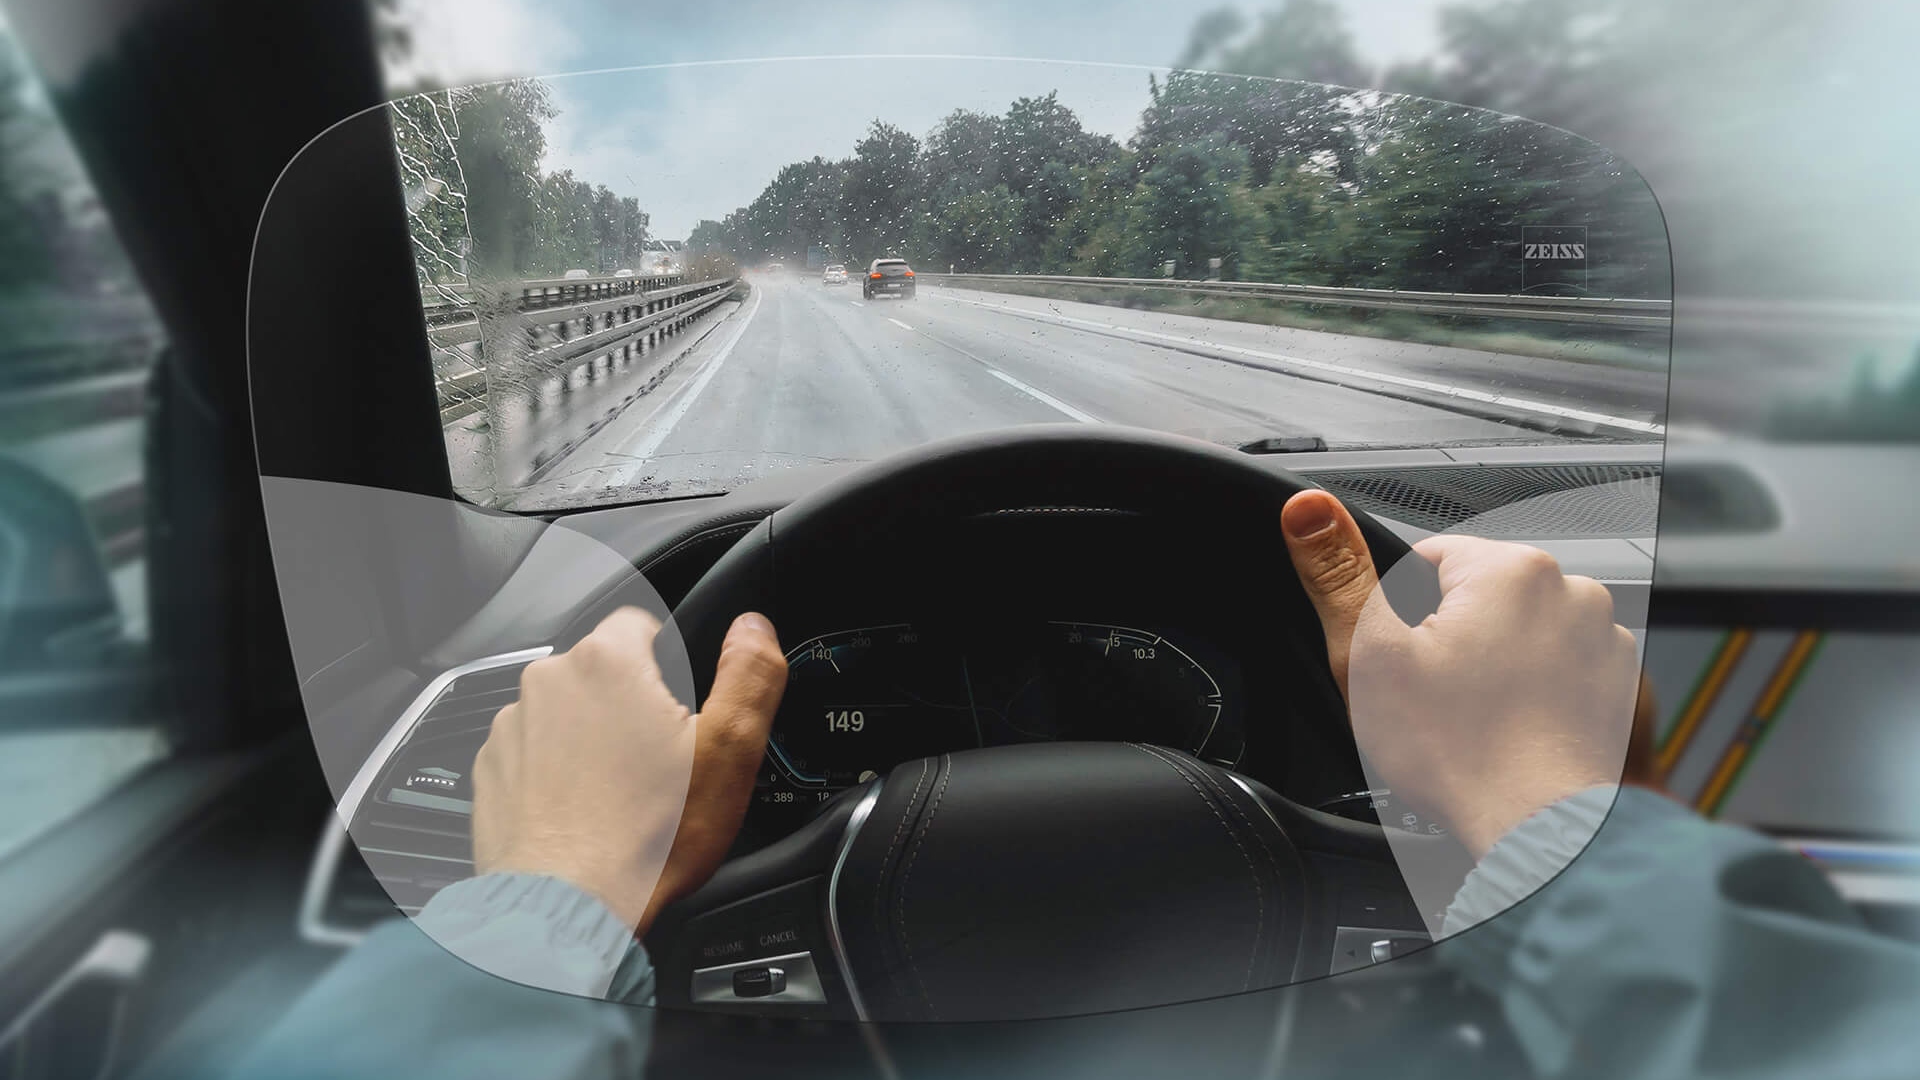 清楚呈現蔡司 DriveSafe Individual 漸進鏡片。圖片顯示透過鏡片看到的景象。 